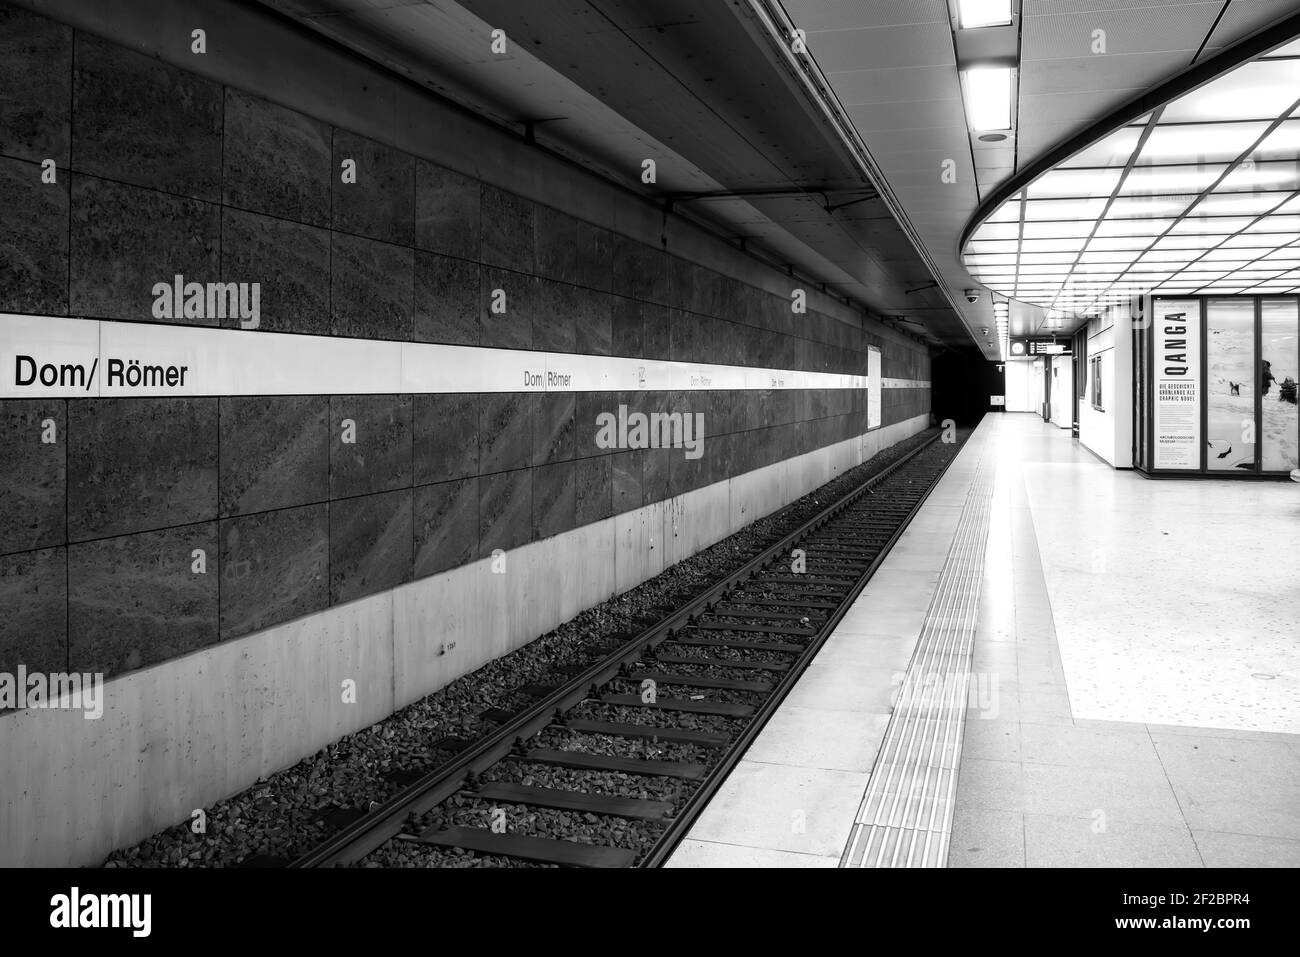 Station de métro Römer Frankfurt am Main, désertée à cause du virus Banque D'Images